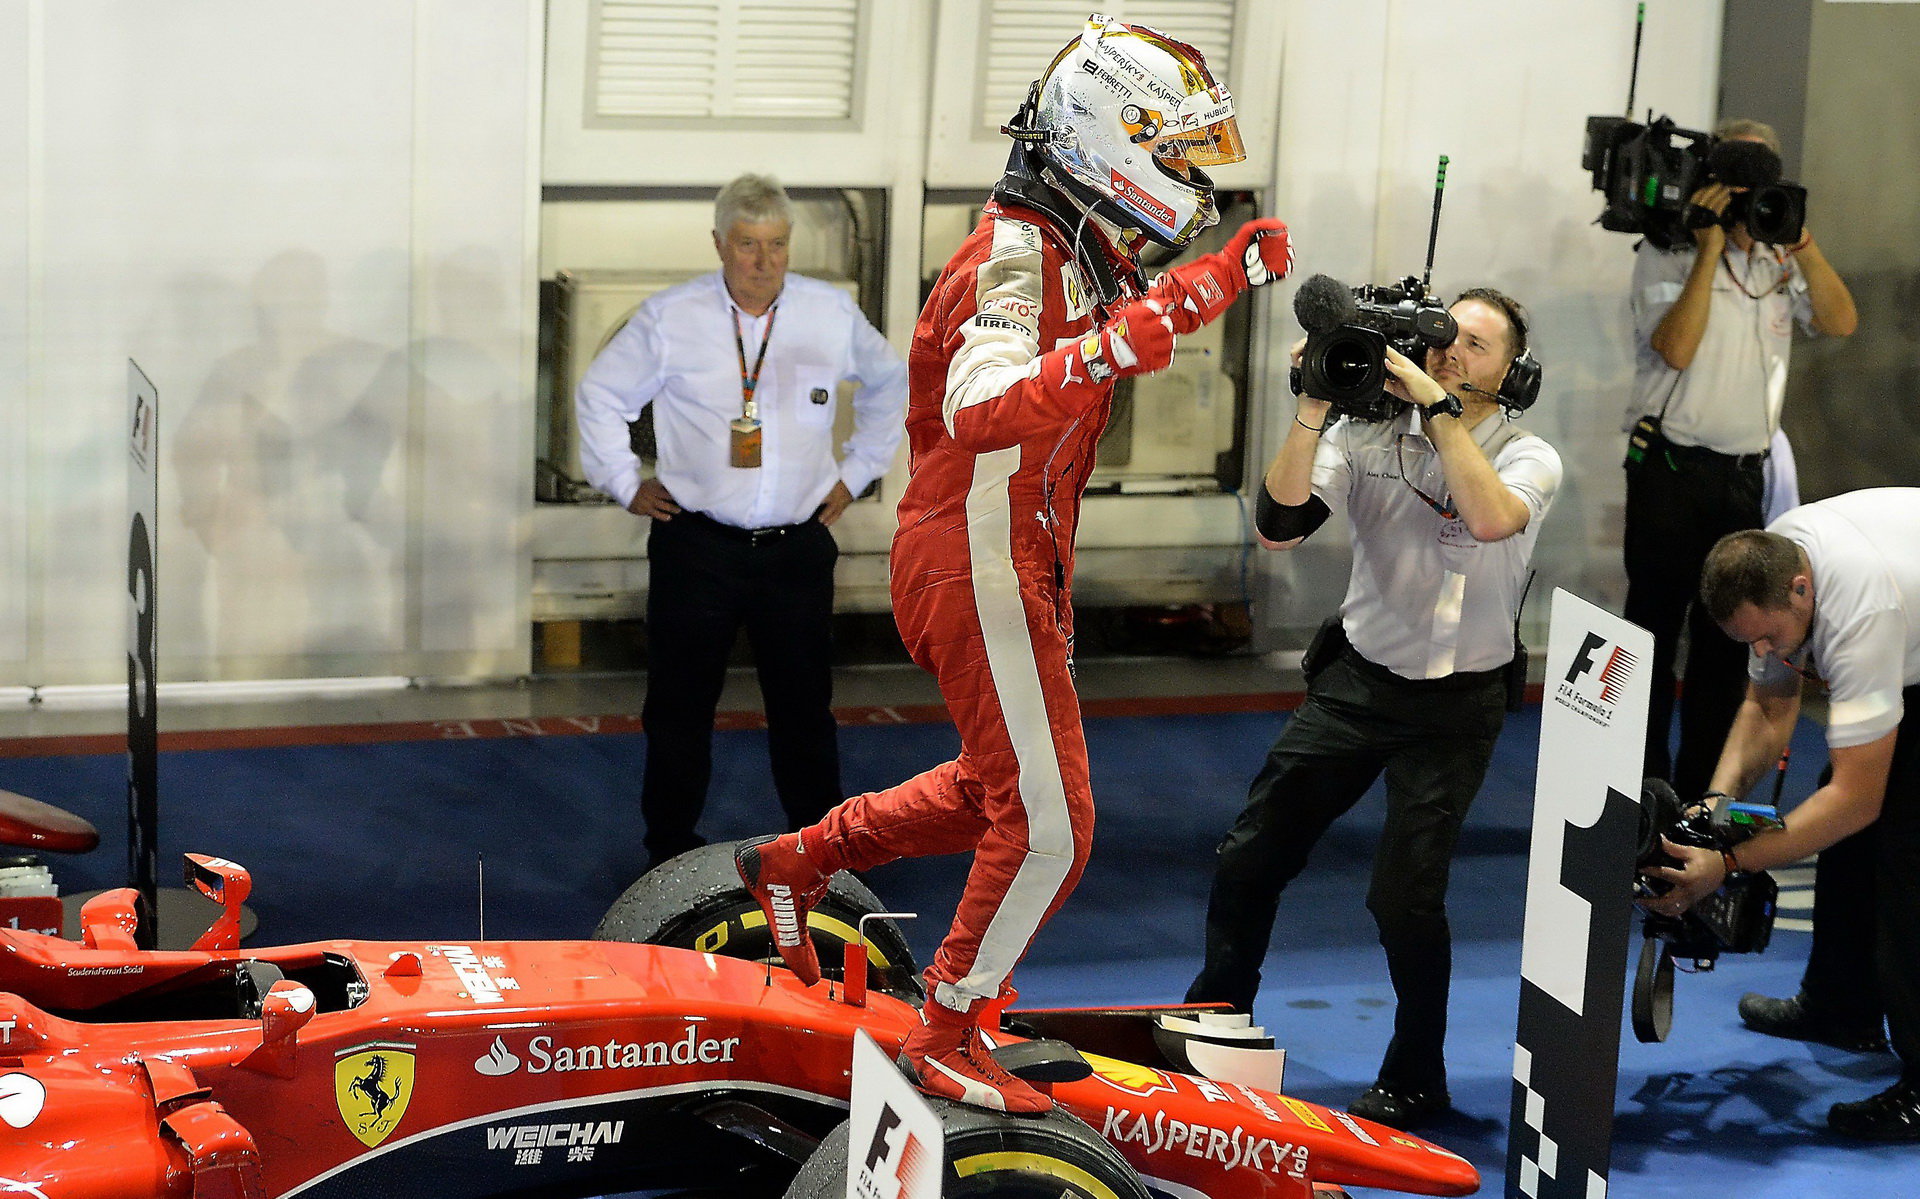 Sebastian Vettel, GP Singapuru (Singapur)